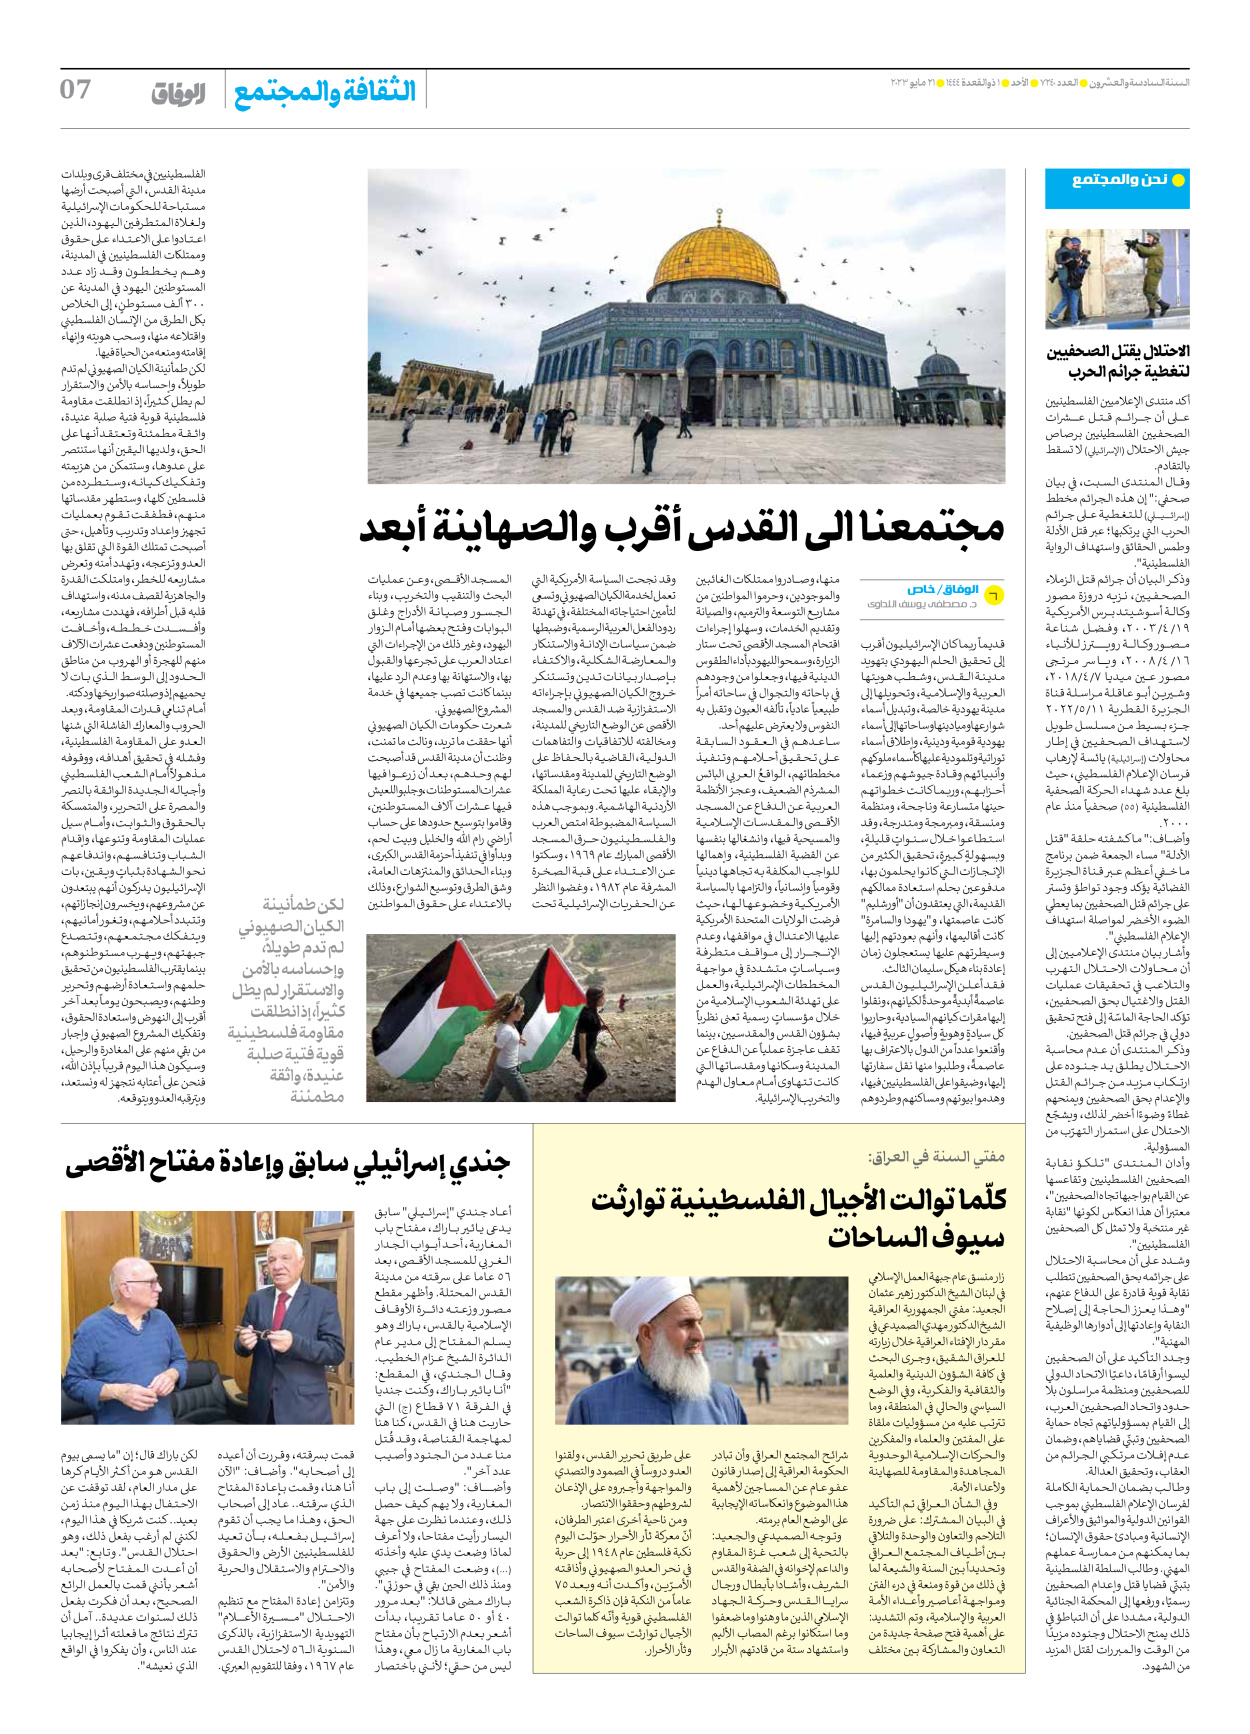 صحیفة ایران الدولیة الوفاق - العدد سبعة آلاف ومائتان وأربعون - ٢١ مايو ٢٠٢٣ - الصفحة ۷